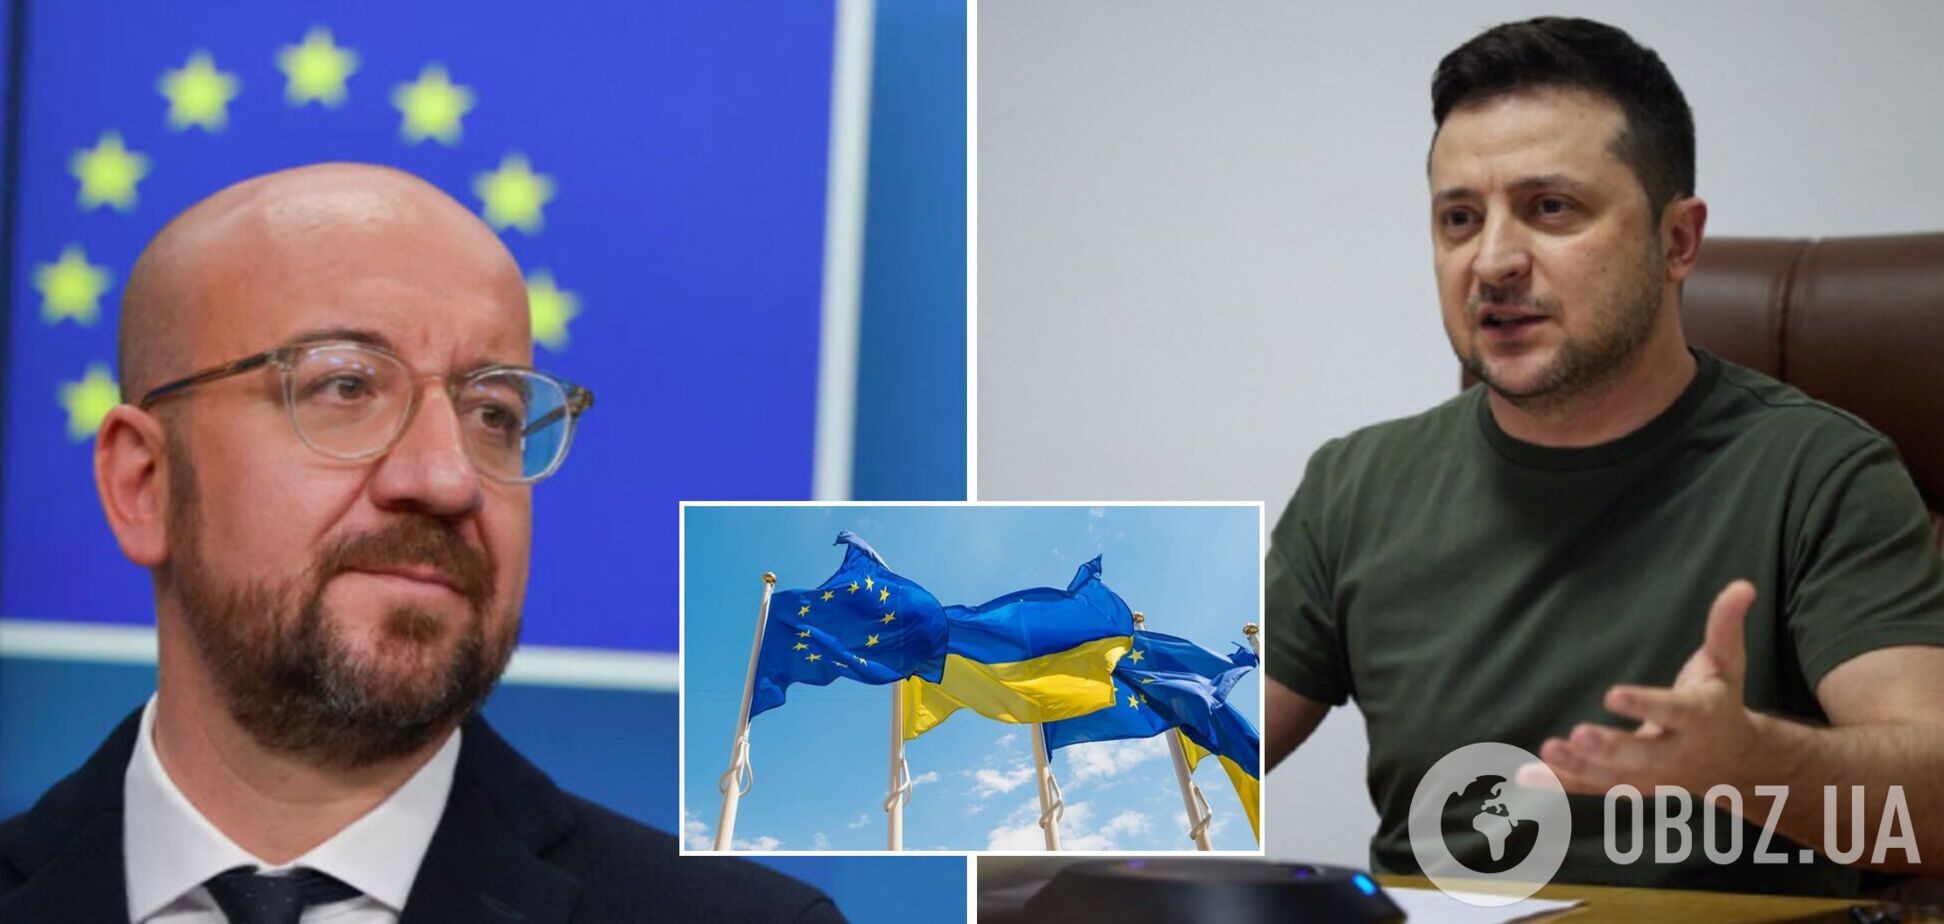 ЕС и партнеры по G7 выделят Украине 9 млрд евро финансовой помощи, – Мишель